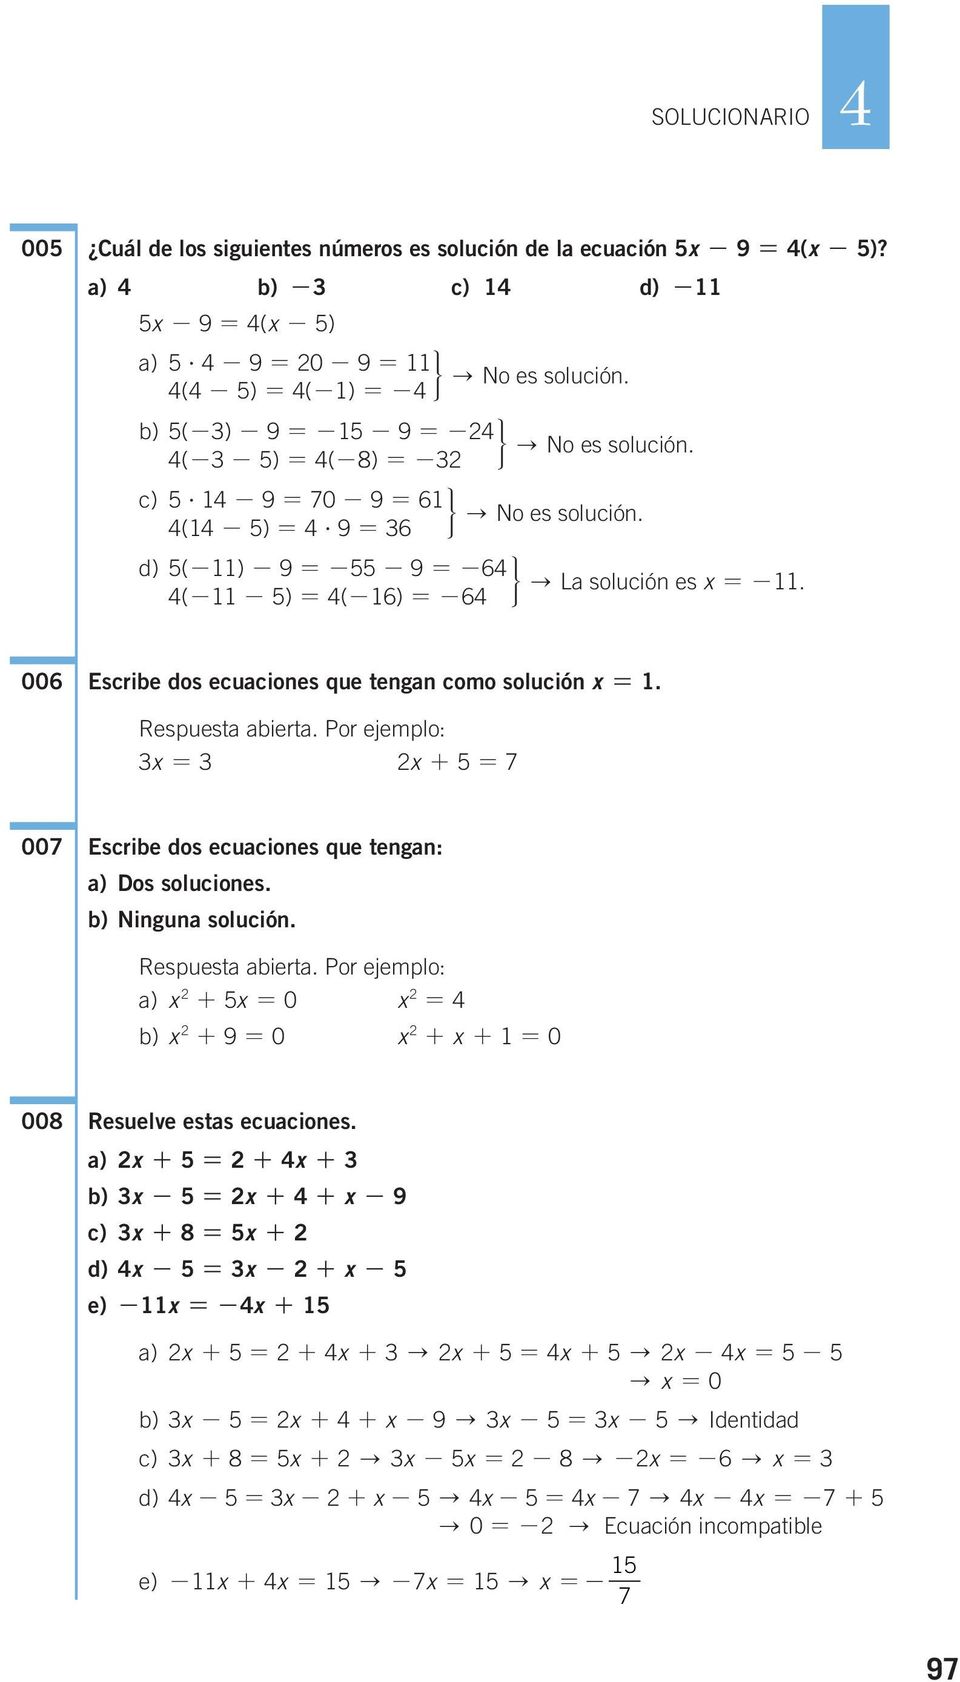 Por ejemplo: + 7 007 Escribe dos ecuaciones que tengan: a) Dos soluciones. b) Ninguna solución. Respuesta abierta. Por ejemplo: a) + 0 b) + 9 0 + + 0 008 Resuelve estas ecuaciones.